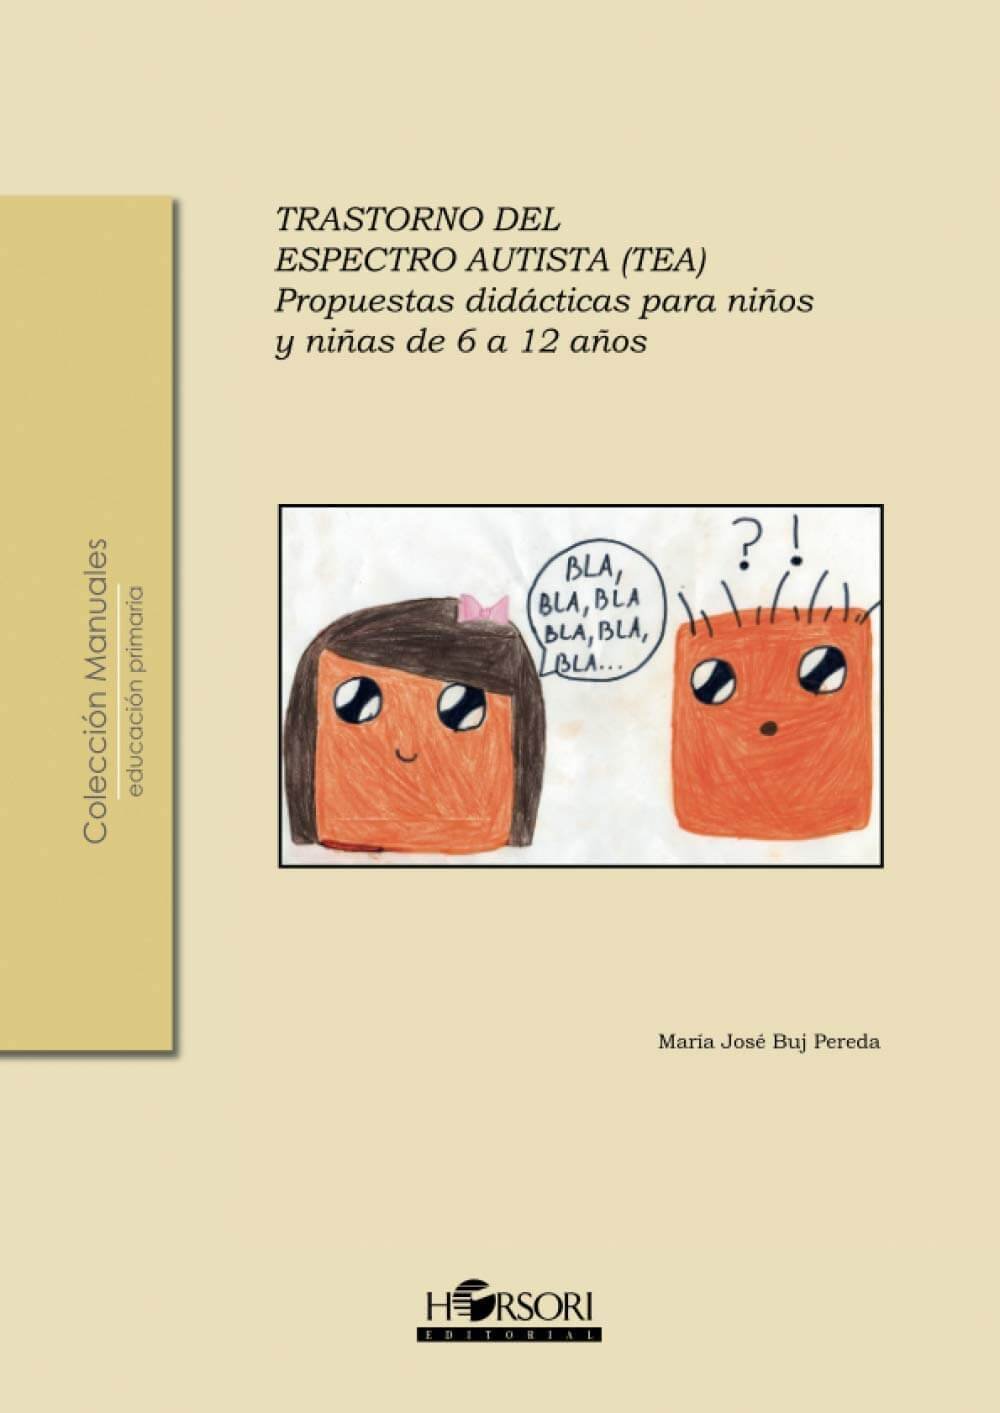 Libro trastorno del espectro autista, propuesta didáctica